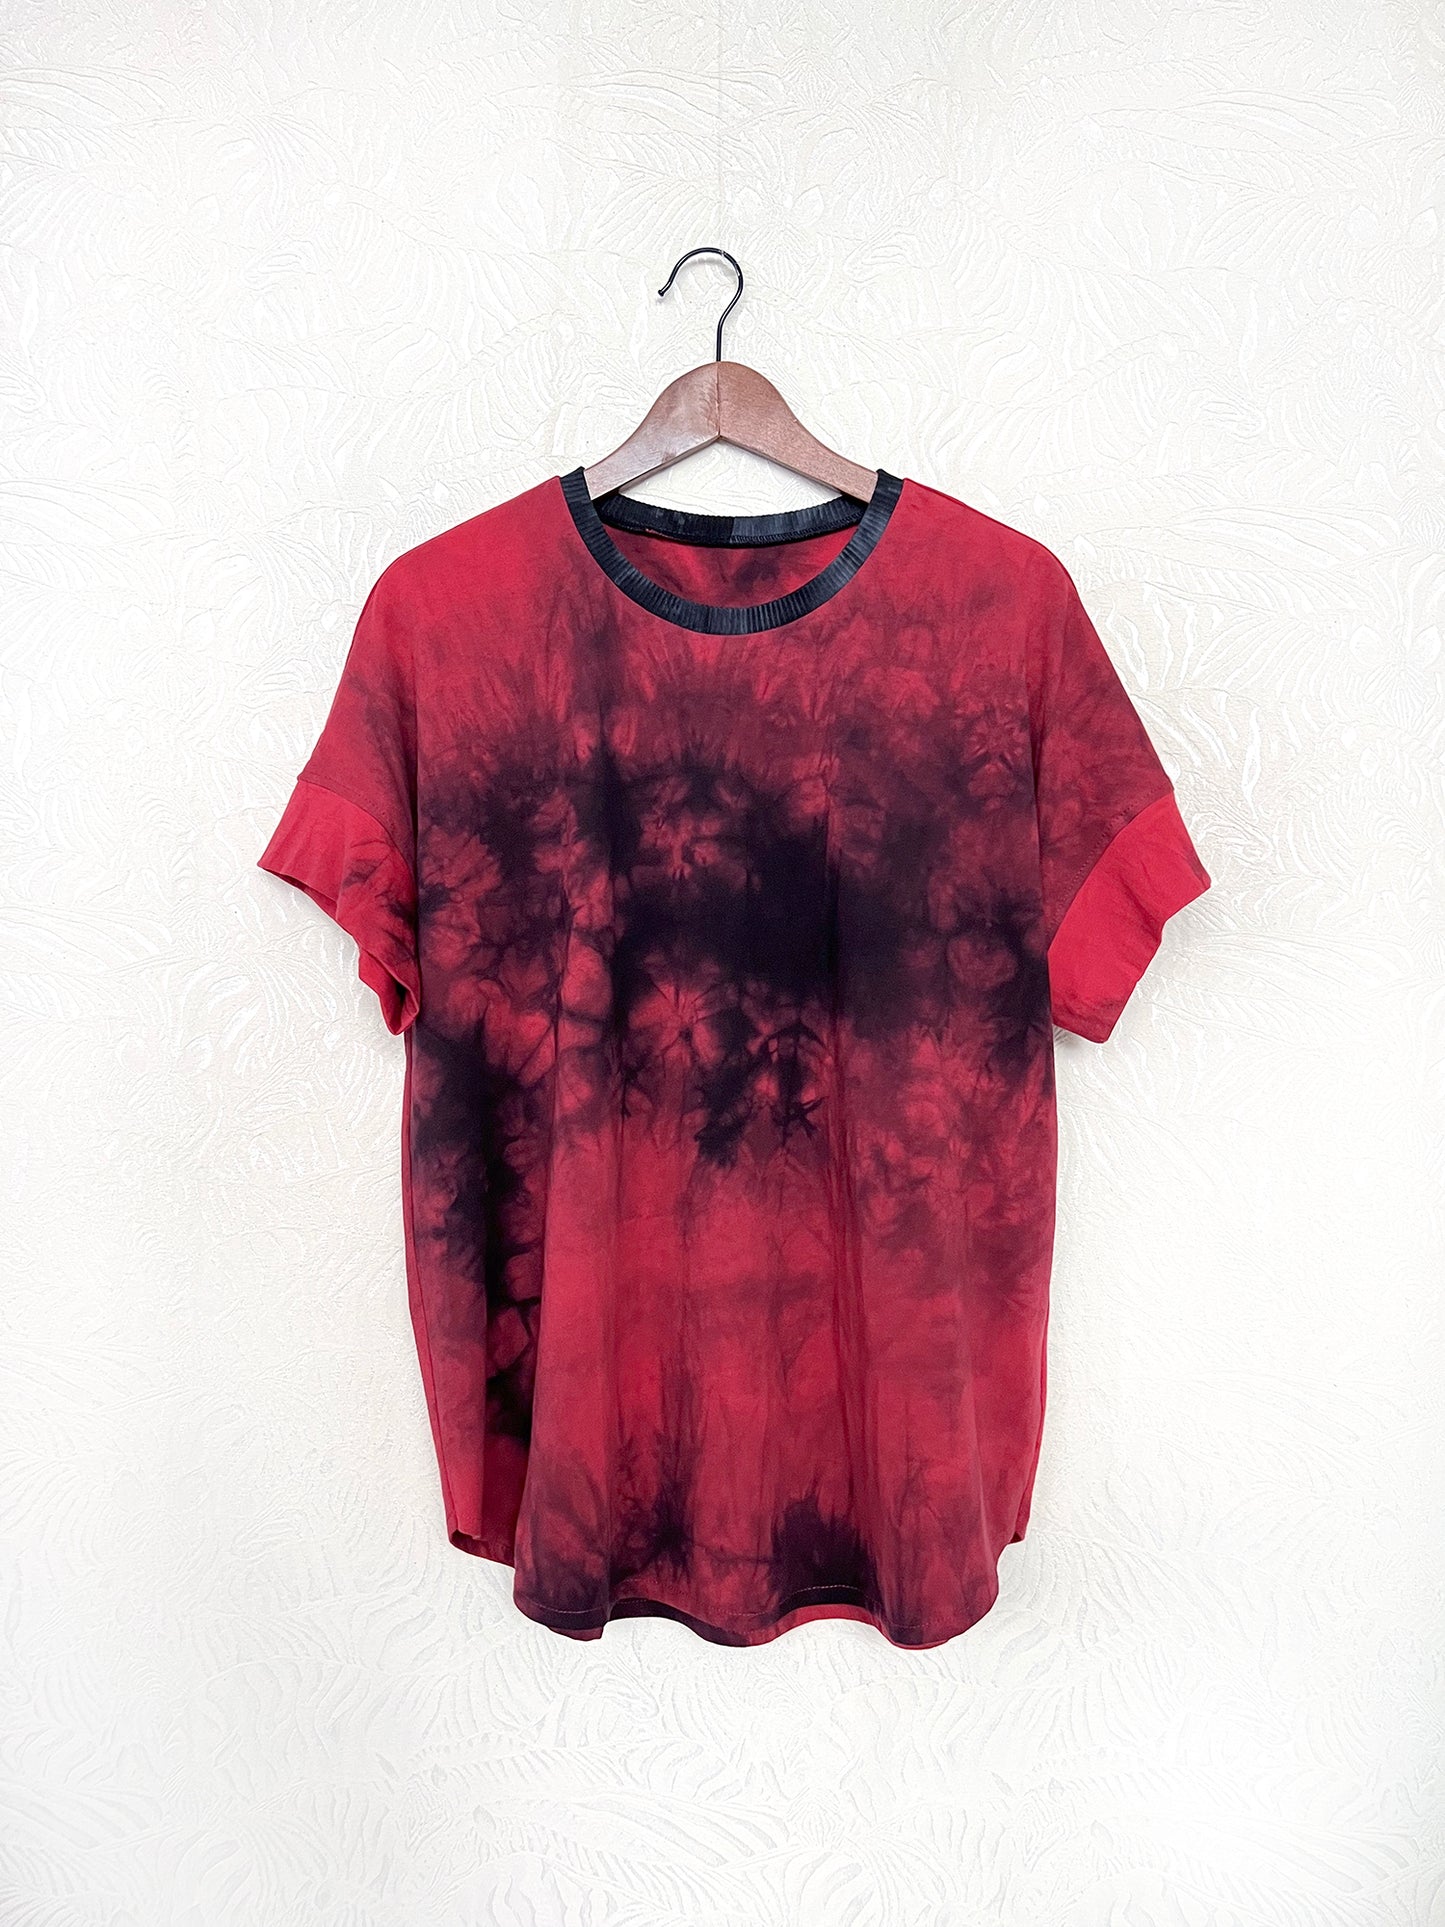 Magic Red T-Shirt / L, XL